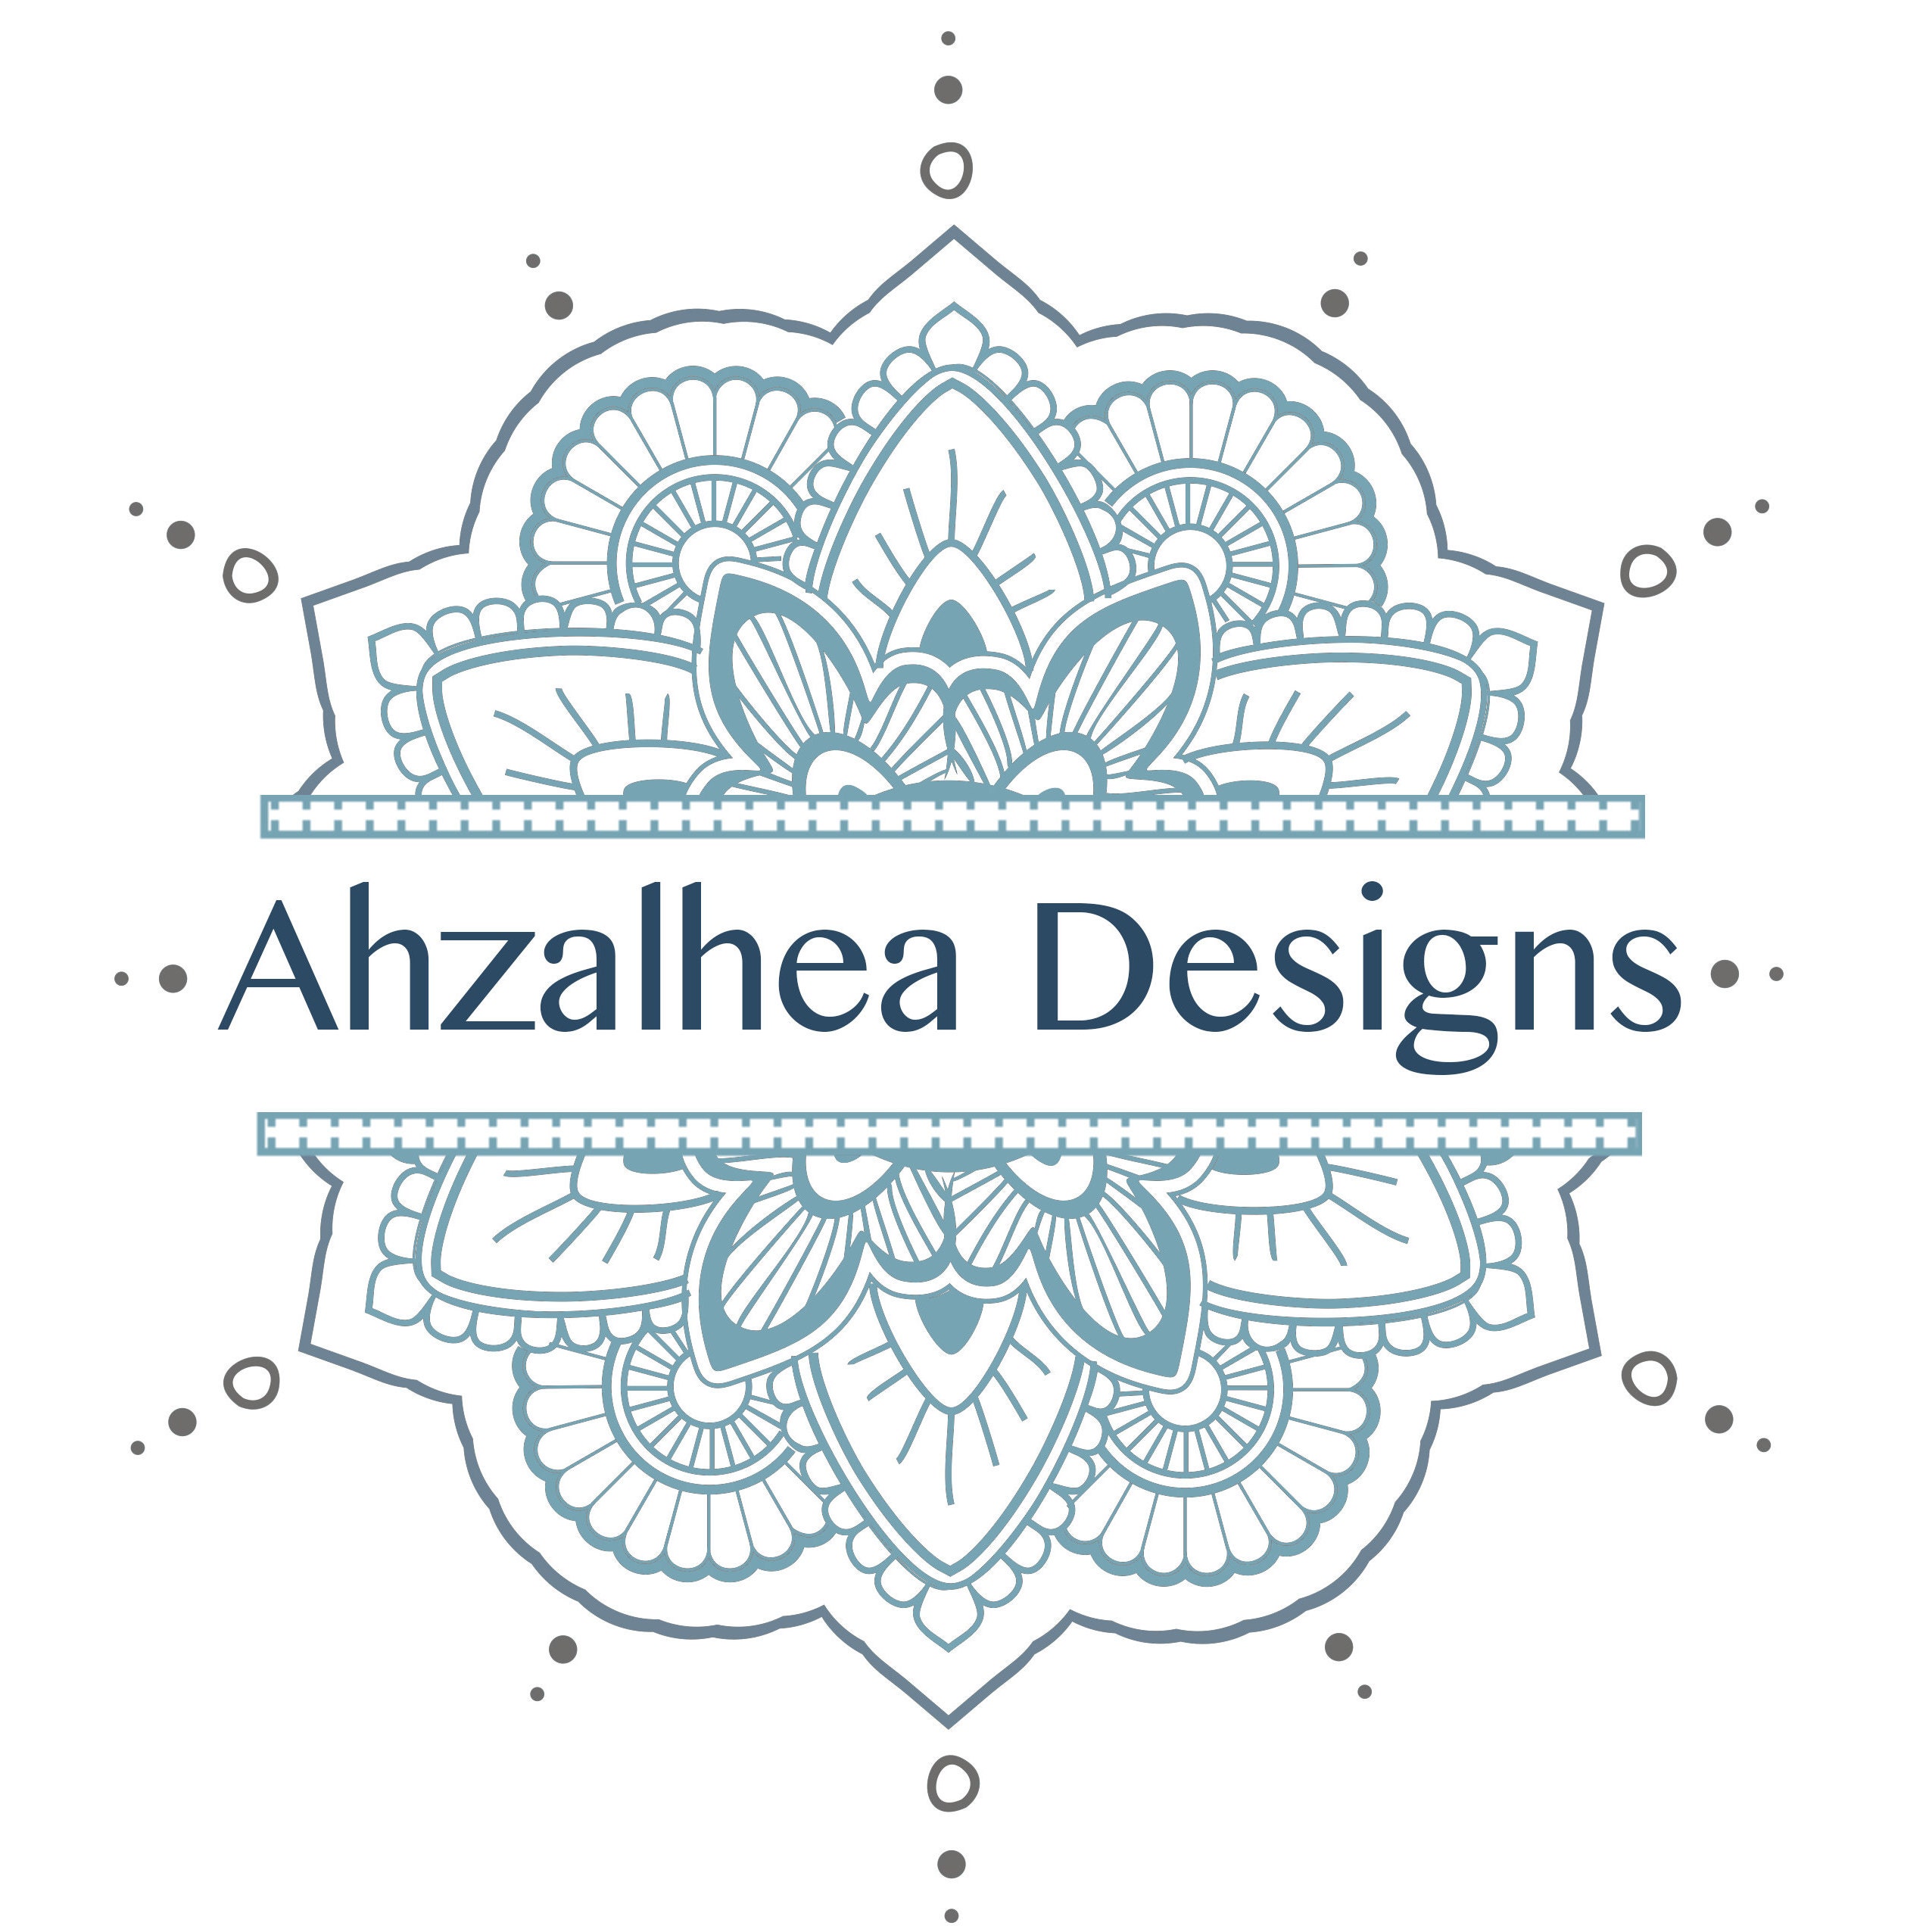 AhzAlhea Designs by Ahzalhea on Etsy